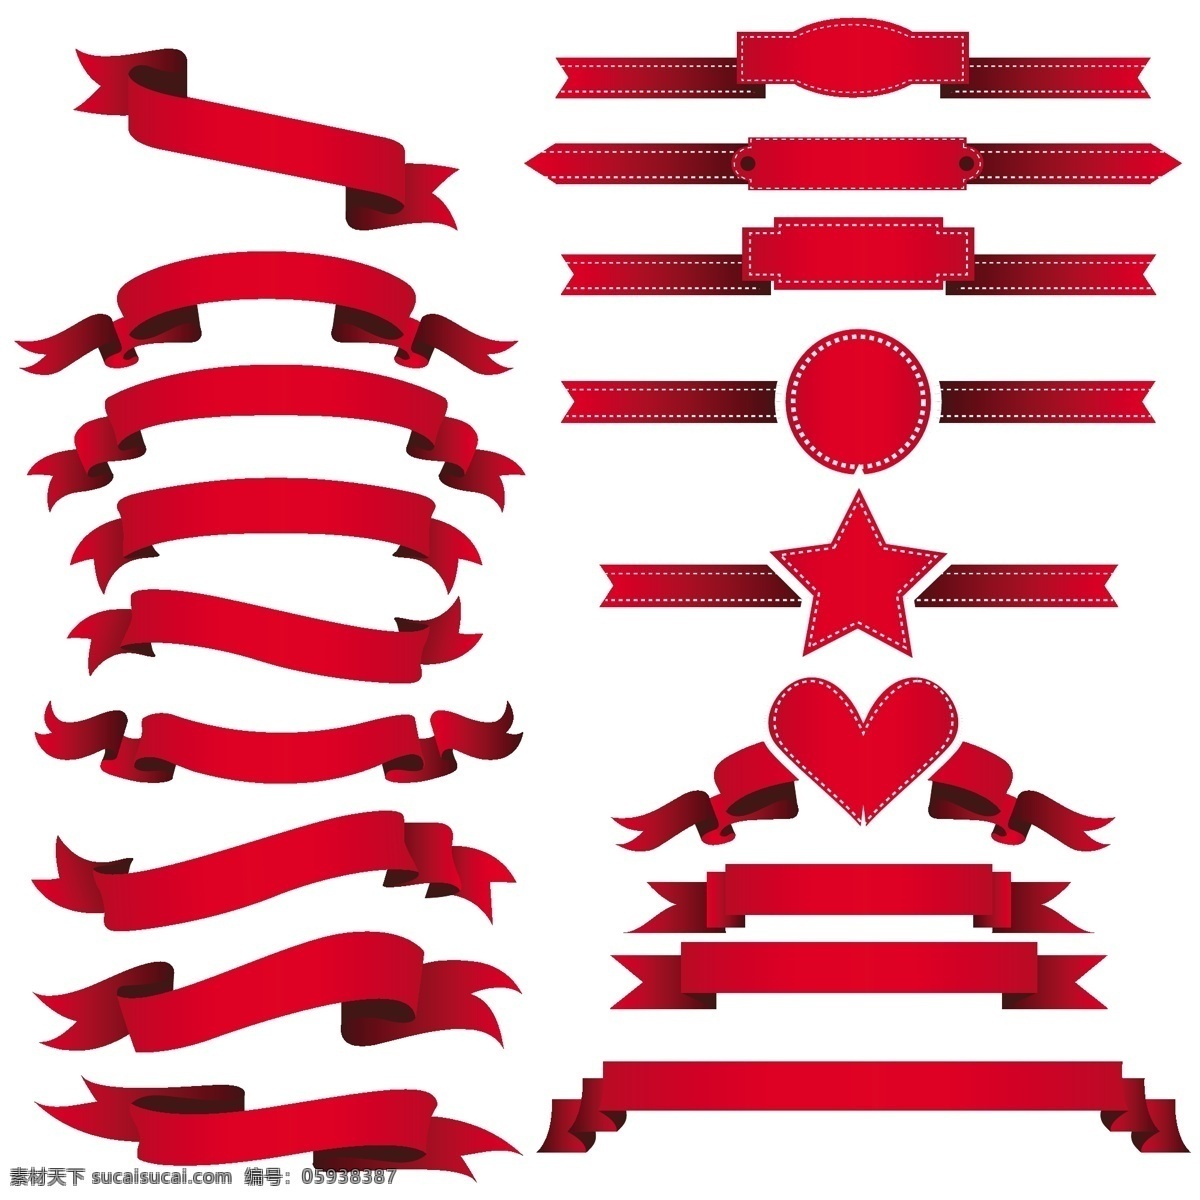 红色 彩带 横幅 标签 矢量 红色彩带 丝带 飘带 装饰 爱心 星星 广告素材 文化艺术 节日庆祝